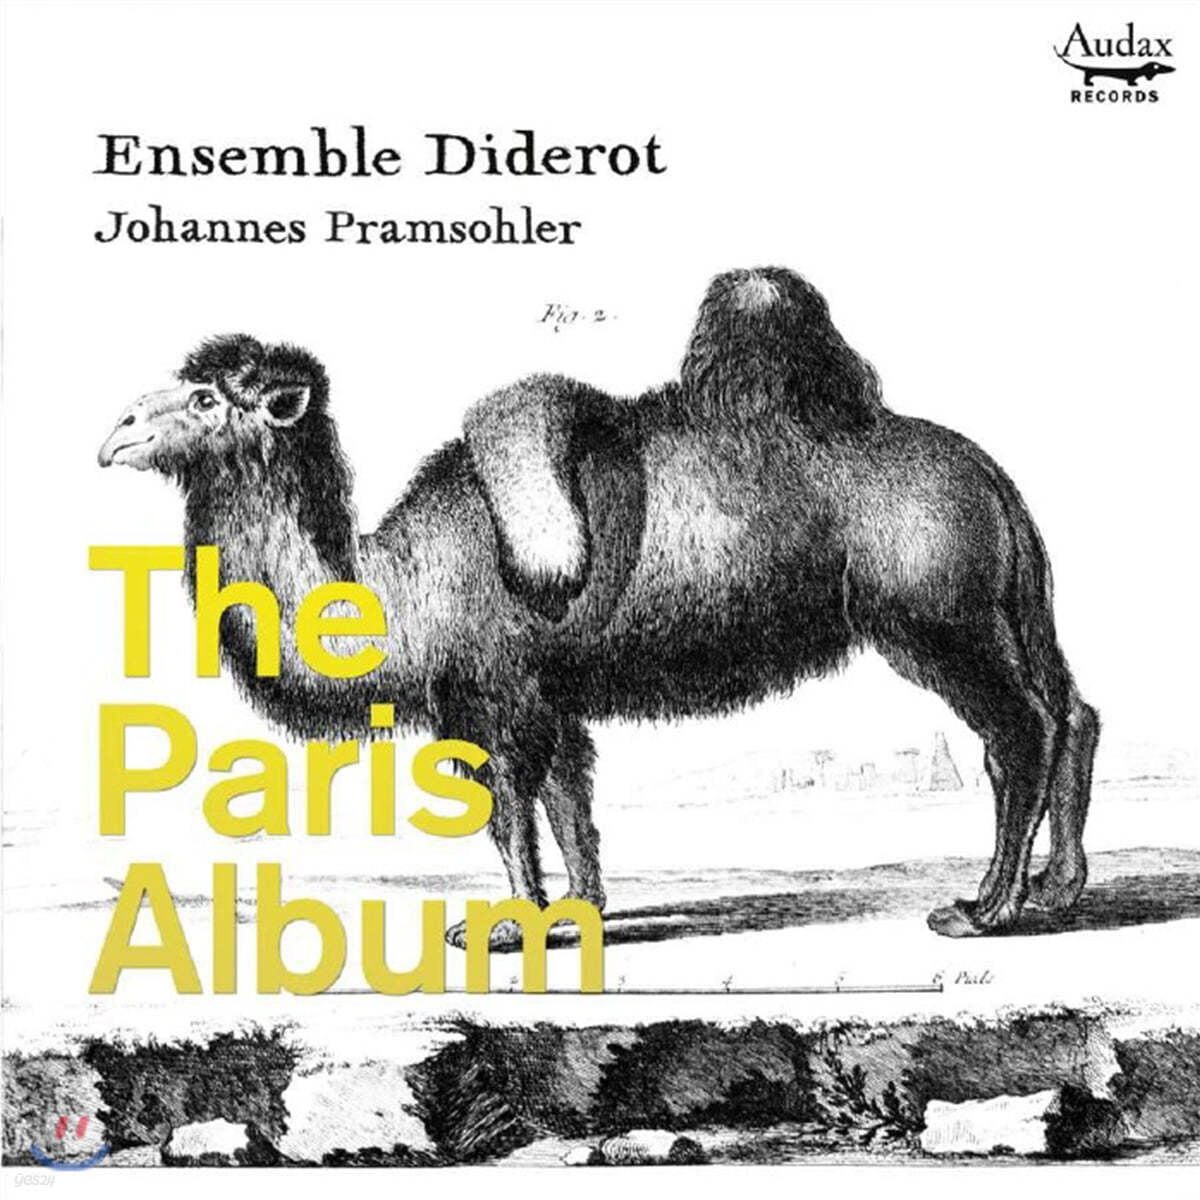 Johannes Pramsohler 파리 앨범 - 초기 프랑스의 트리오 소나타집 (The Paris Album)